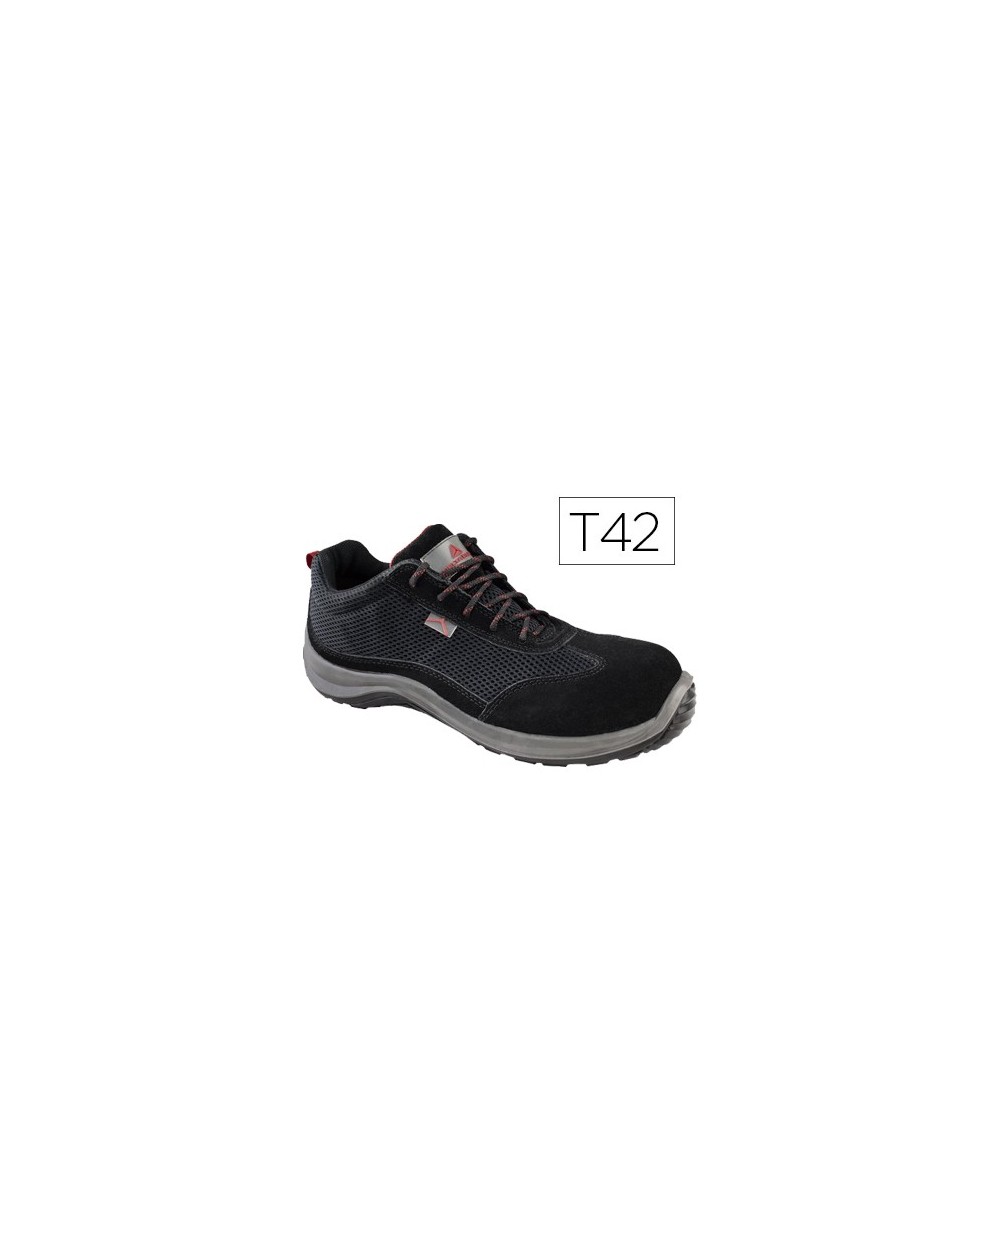 Zapatos de seguridad deltaplus asti piel de serraje afelpado suela de composite negro talla 42